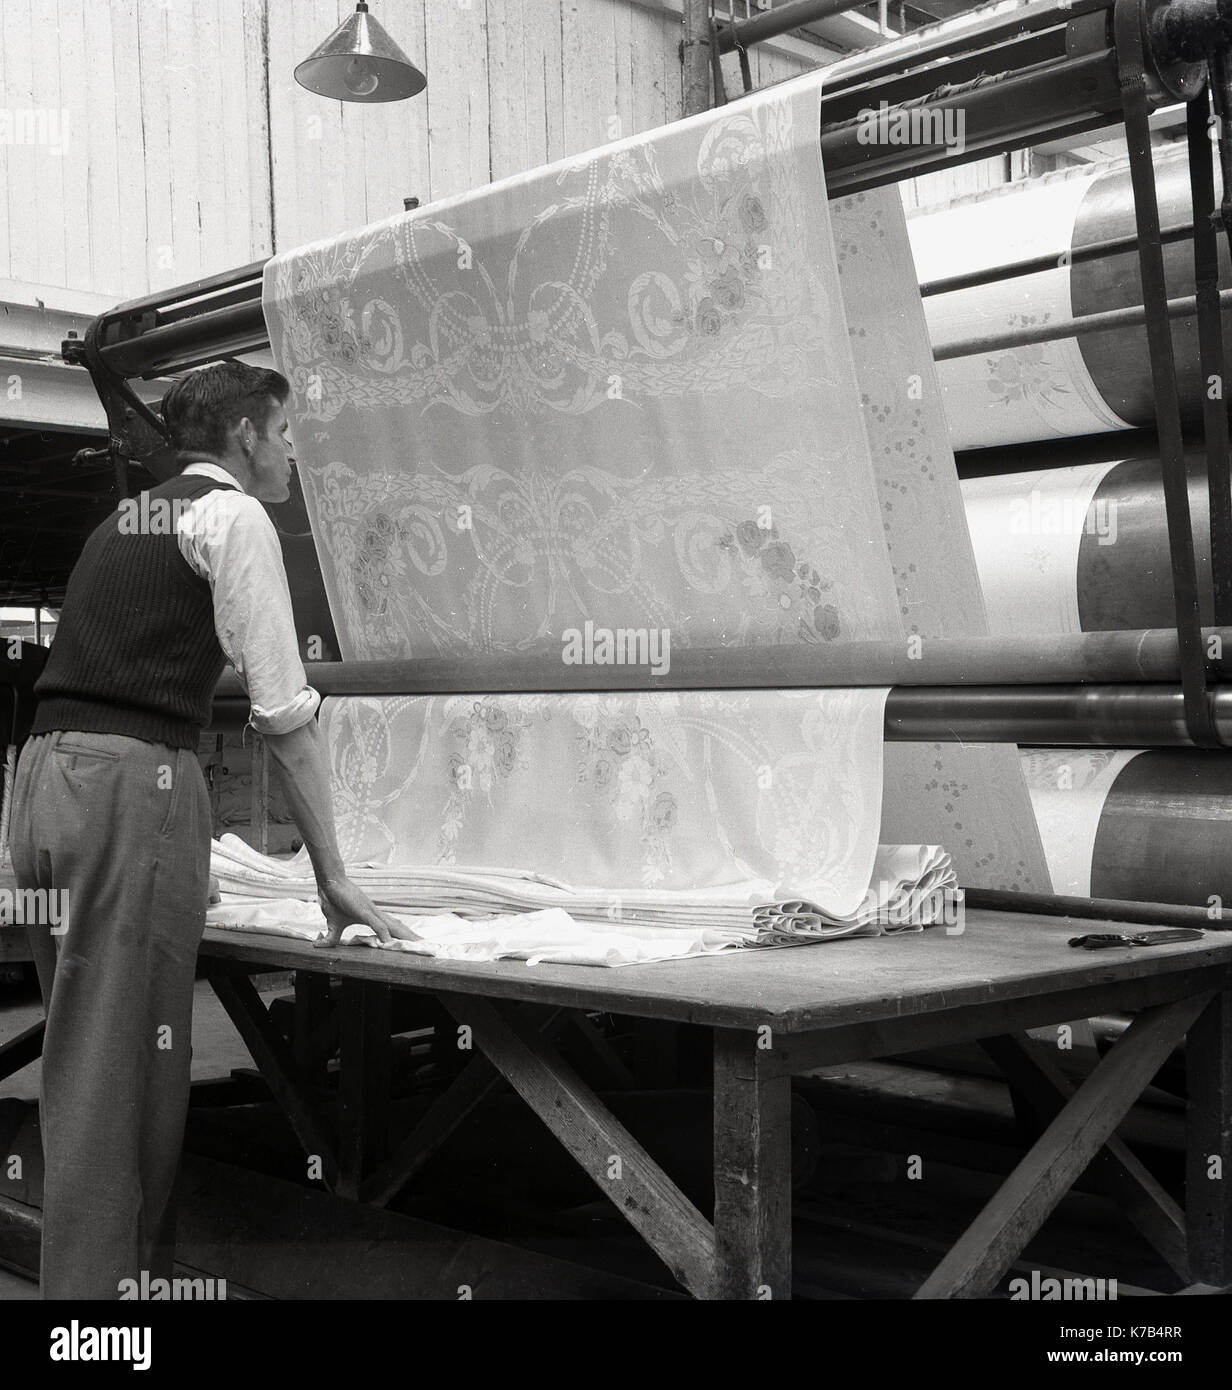 Années 1950, historique, un homme debout à côté d'une table vérifiant la qualité du linge irlandais, stocké sur de grands rouleaux, Irlande du Nord. Banque D'Images